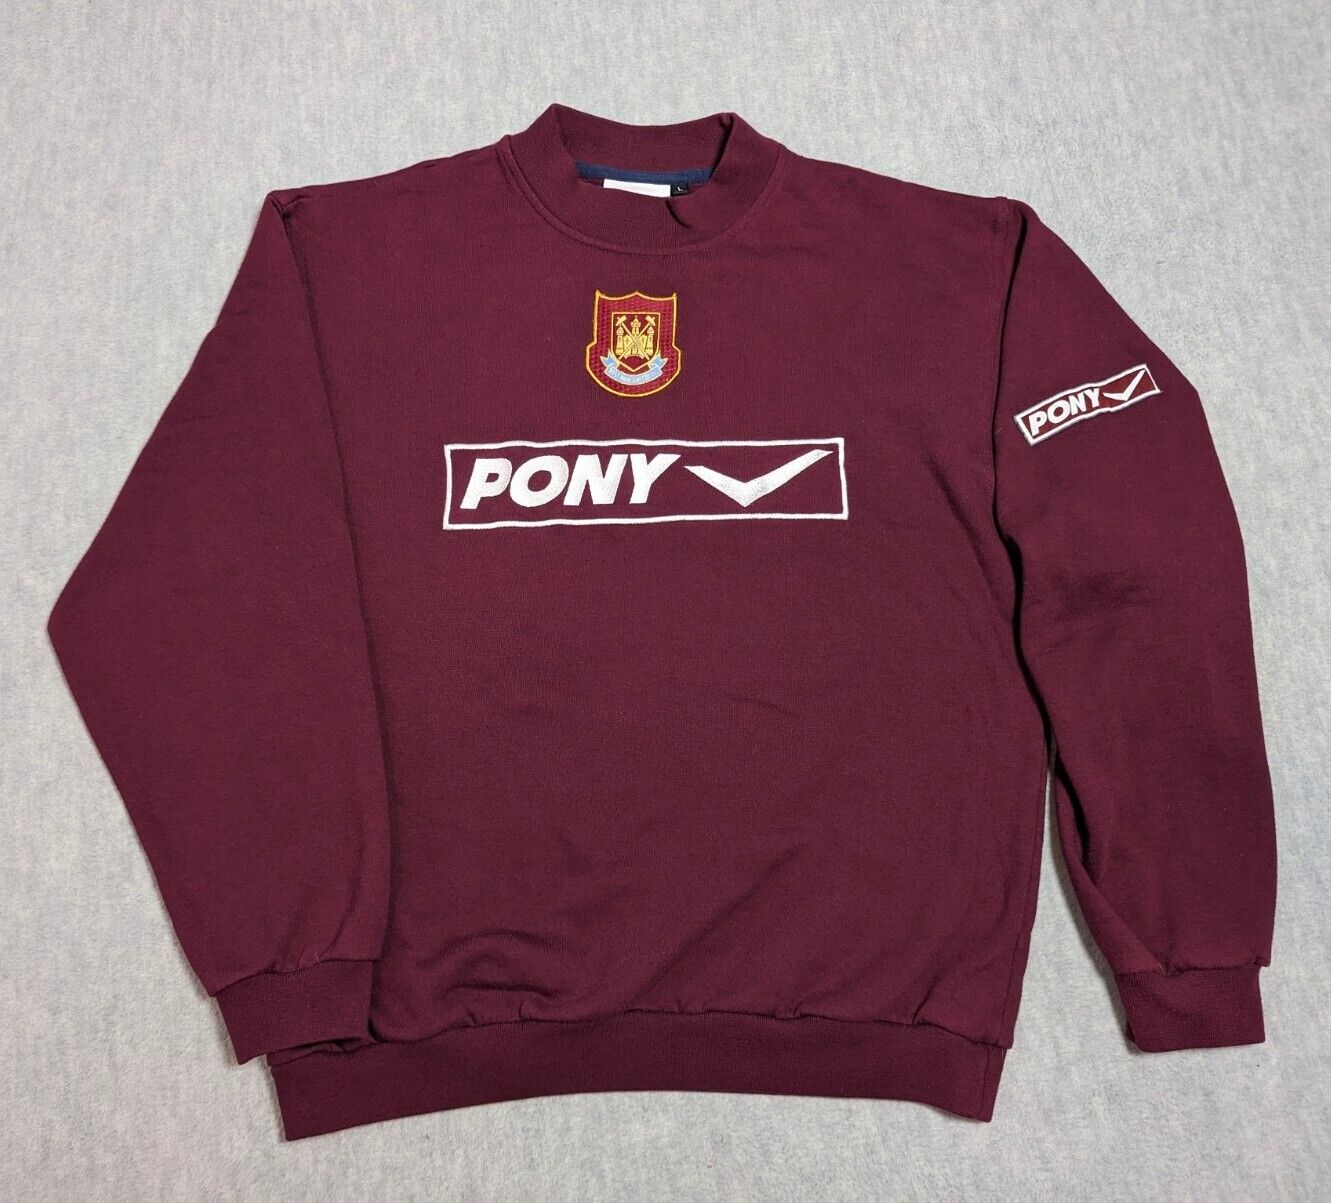 Vintage Pony West Ham United FC Soccer Sweatshirt Size Large Maroon Burgundy